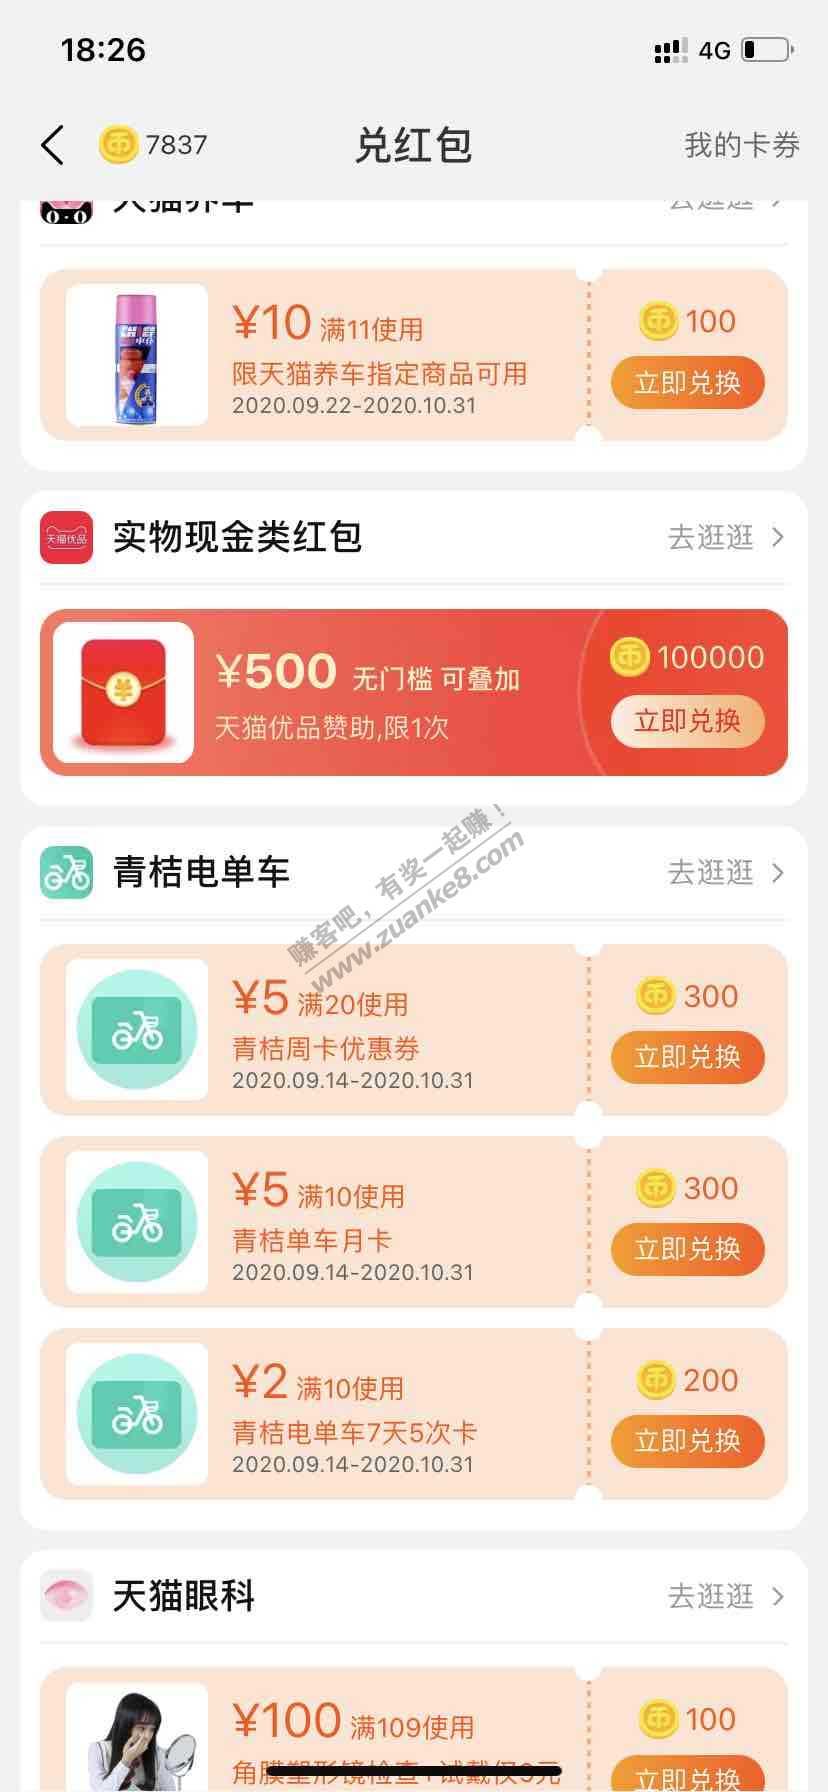 10w淘金币兑换500天猫红包、冲冲冲-惠小助(52huixz.com)